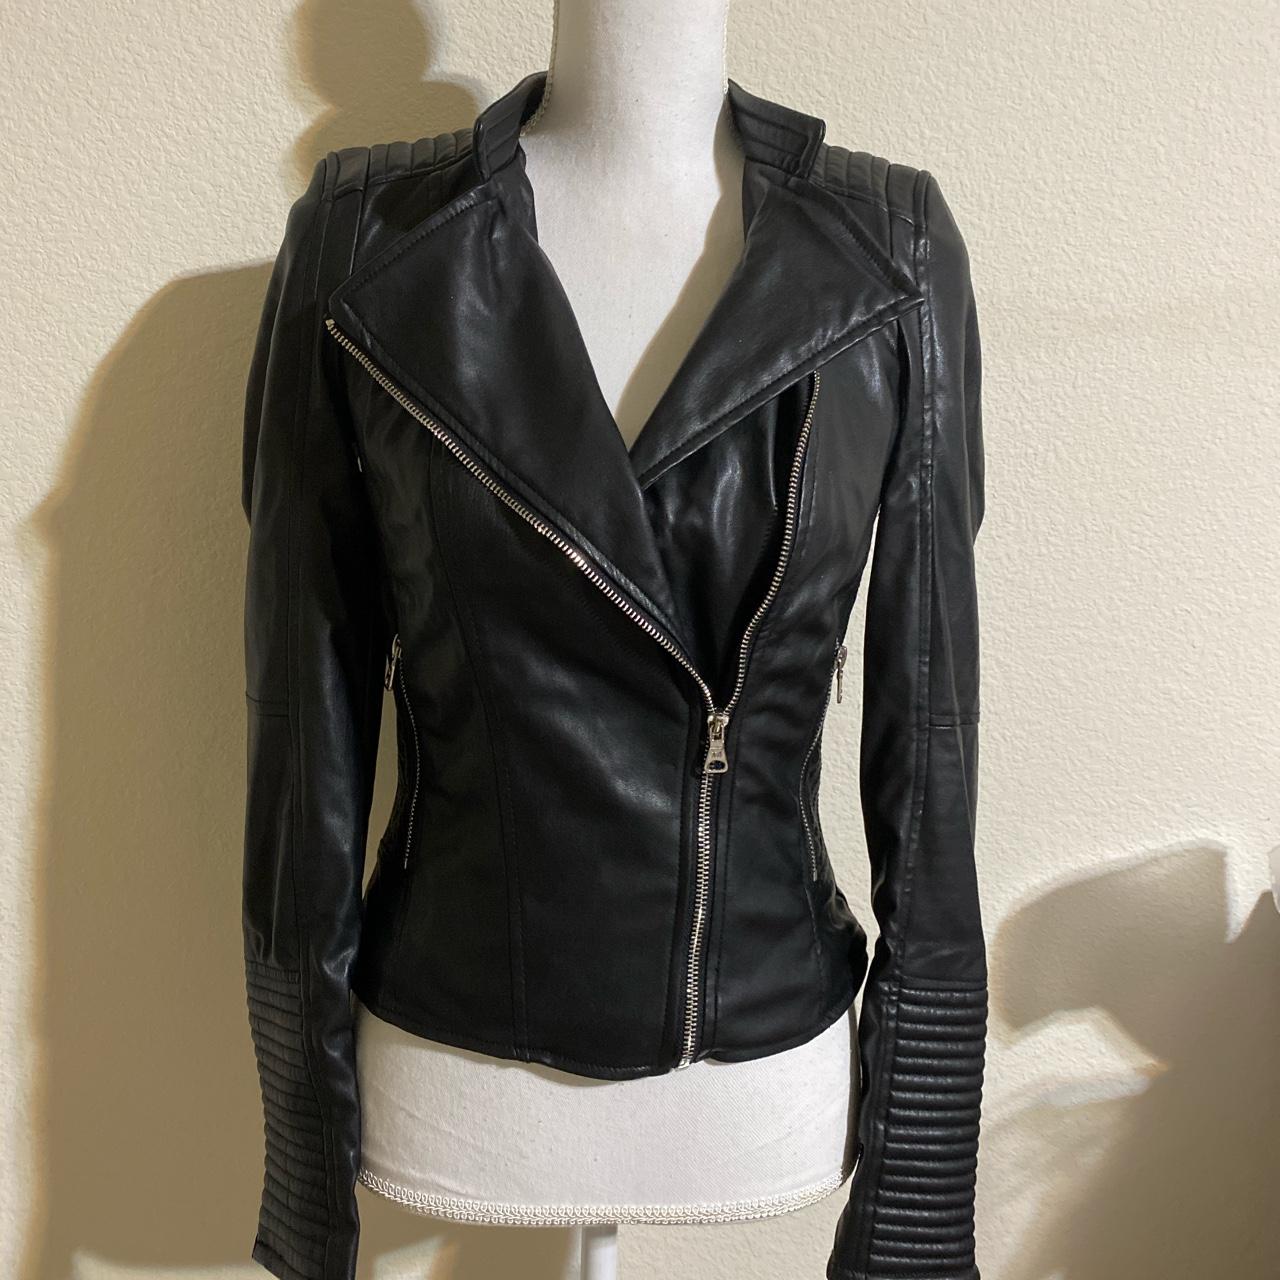 Zara trafaluc faux leather moto jacket Item is in... - Depop